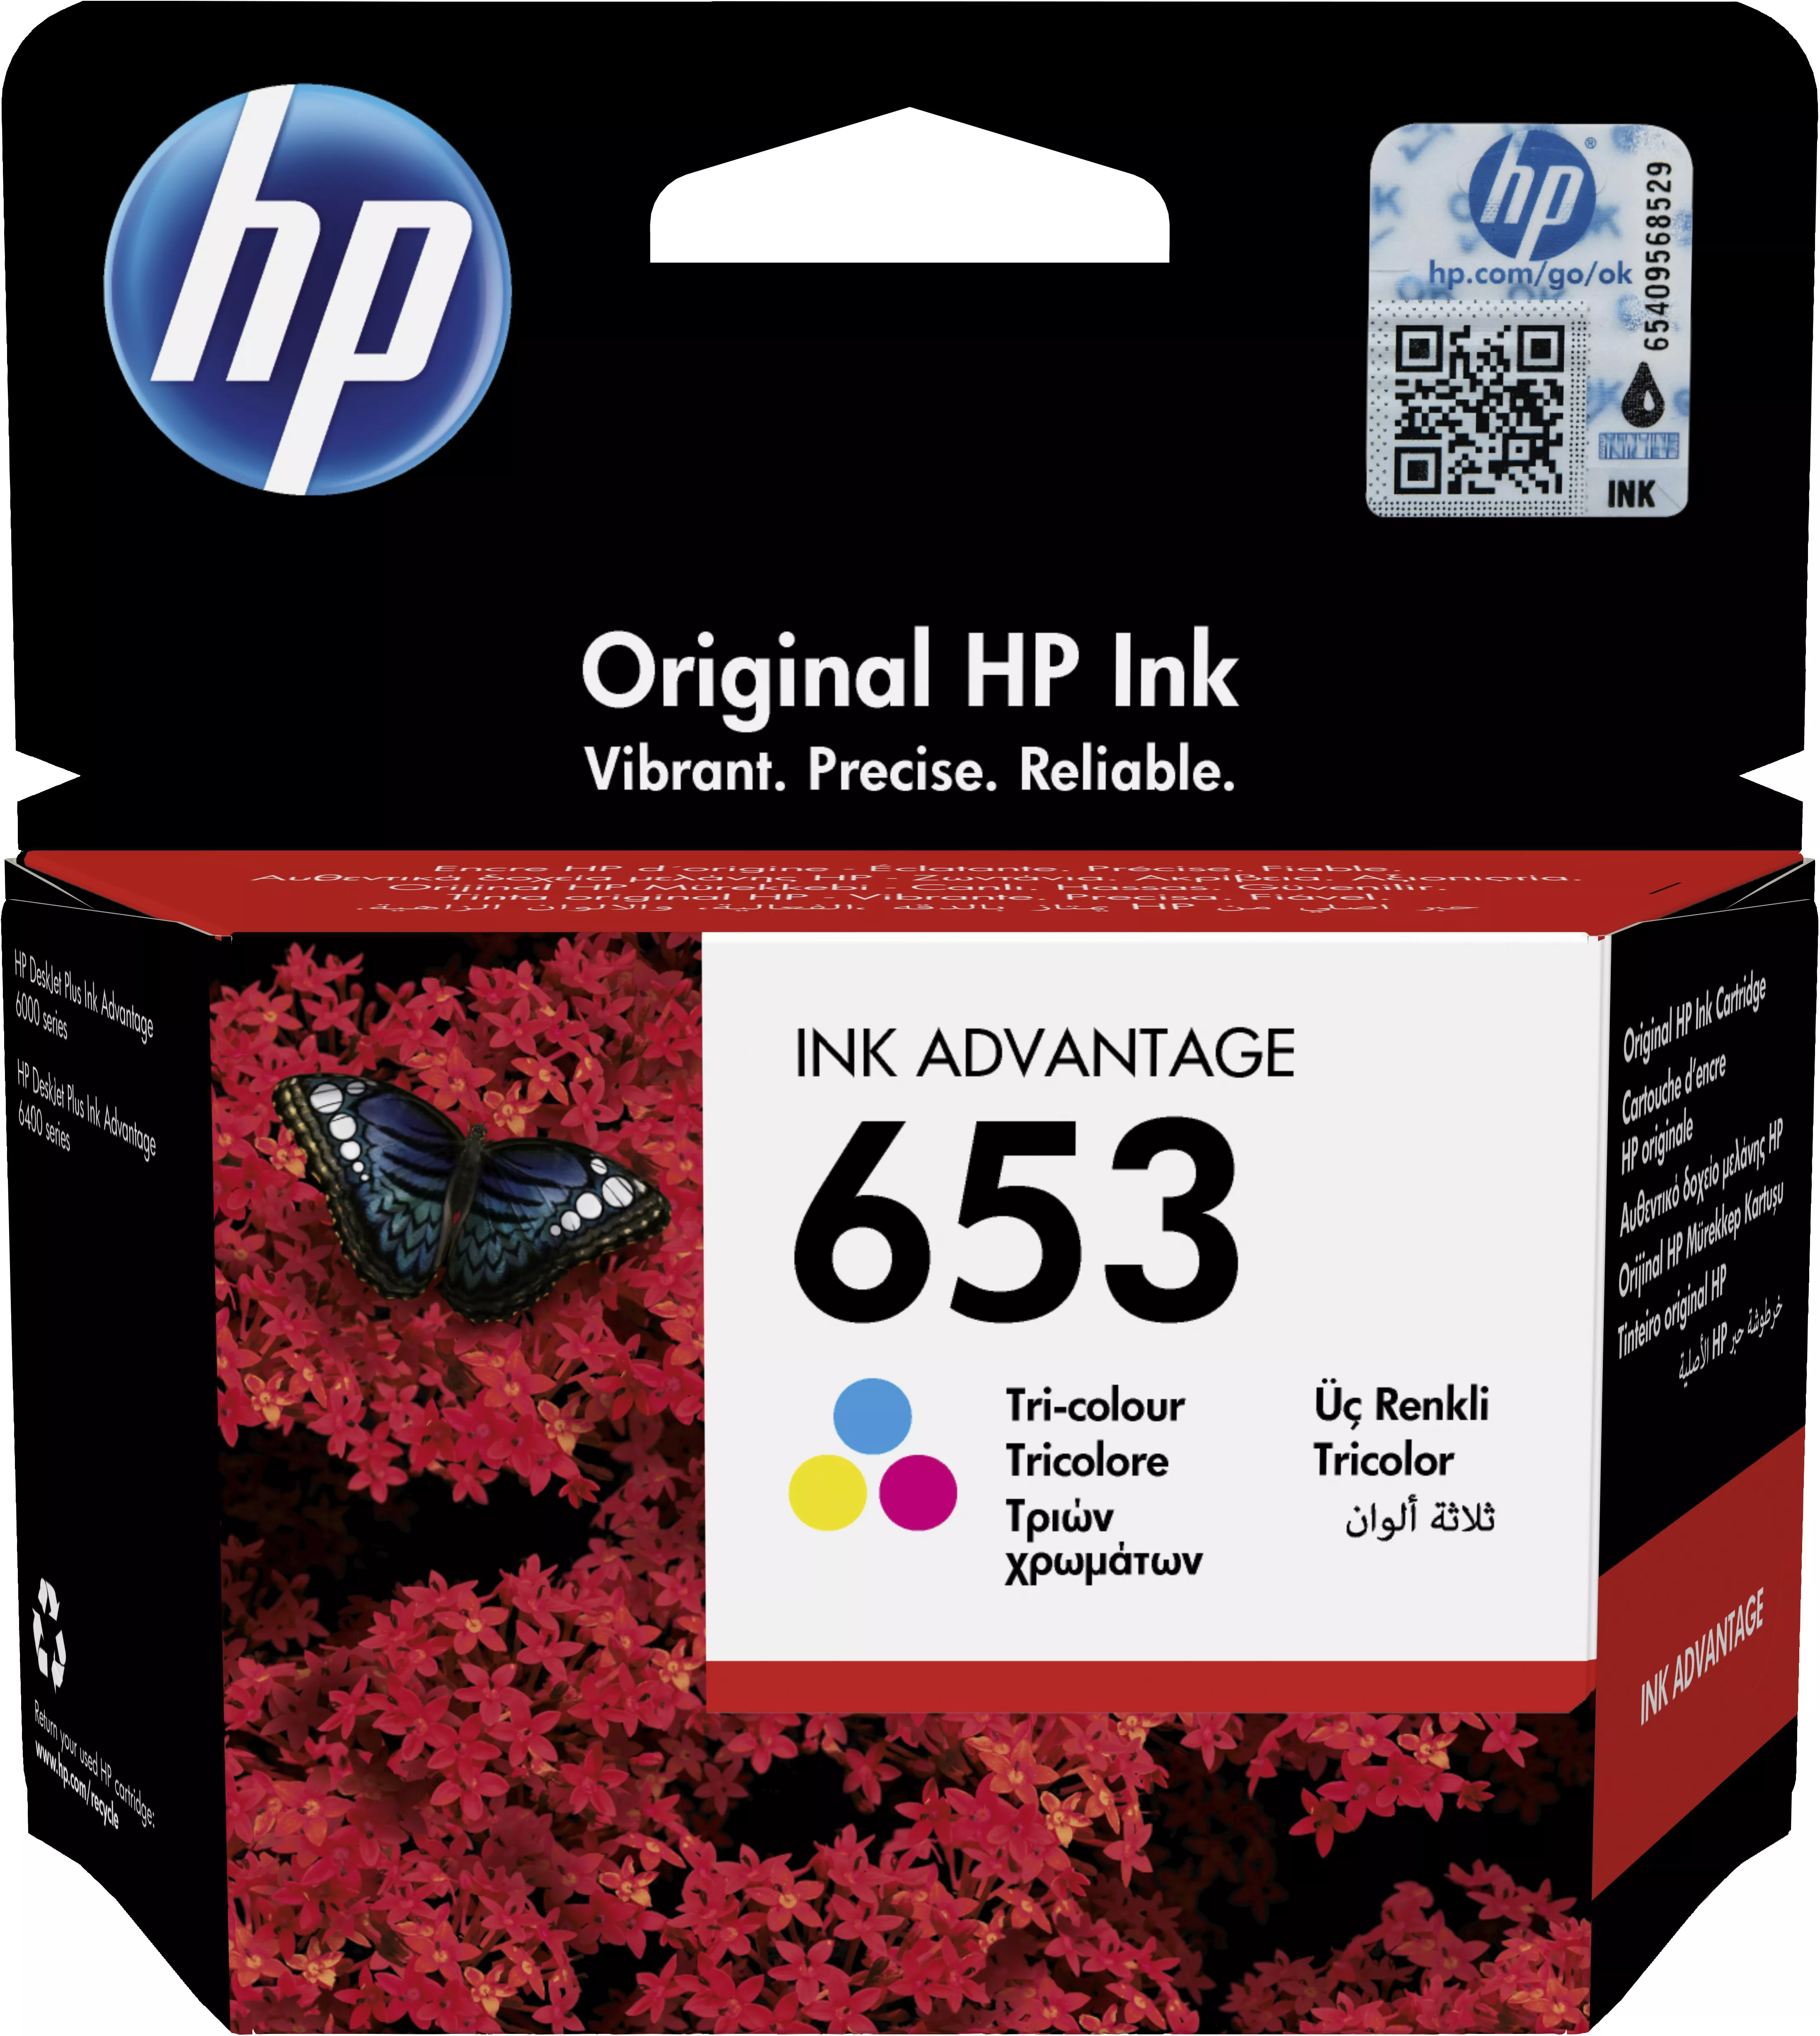 Achat HP 653 Tri-color Original Ink Advantage Cartridge au meilleur prix